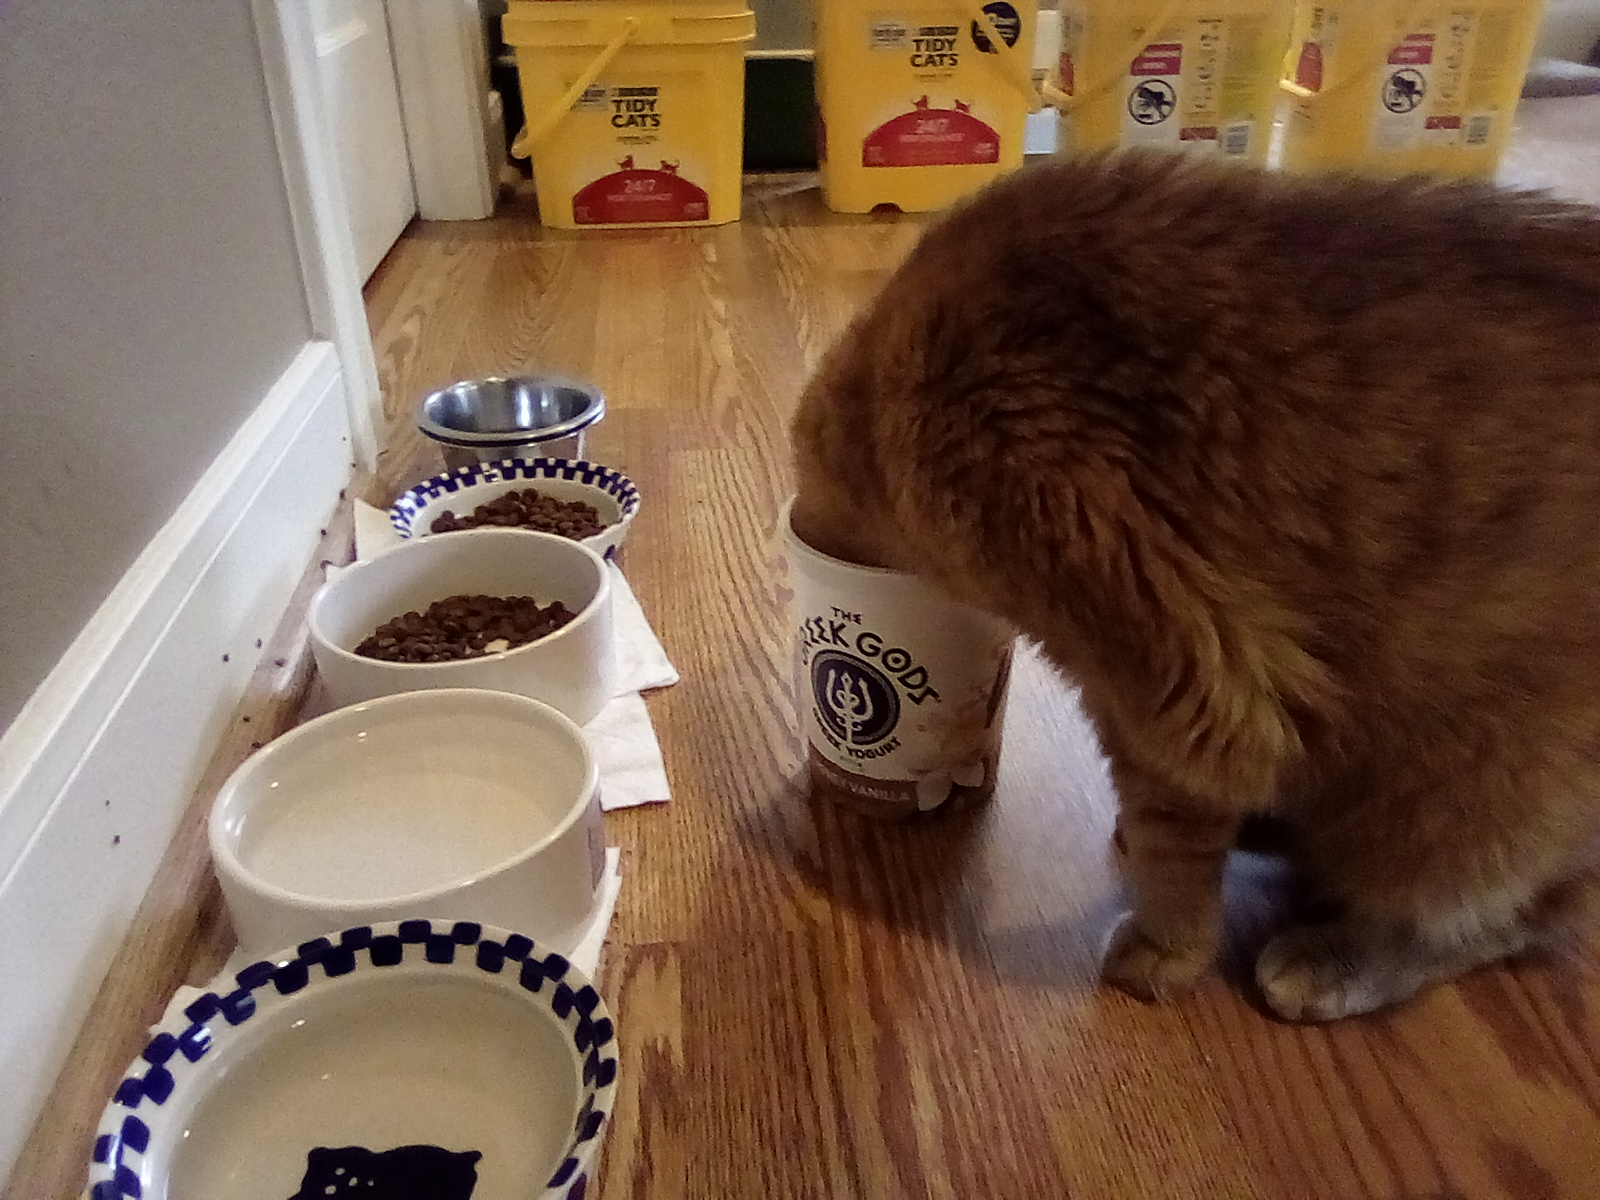 Cat with head in yogurt tub